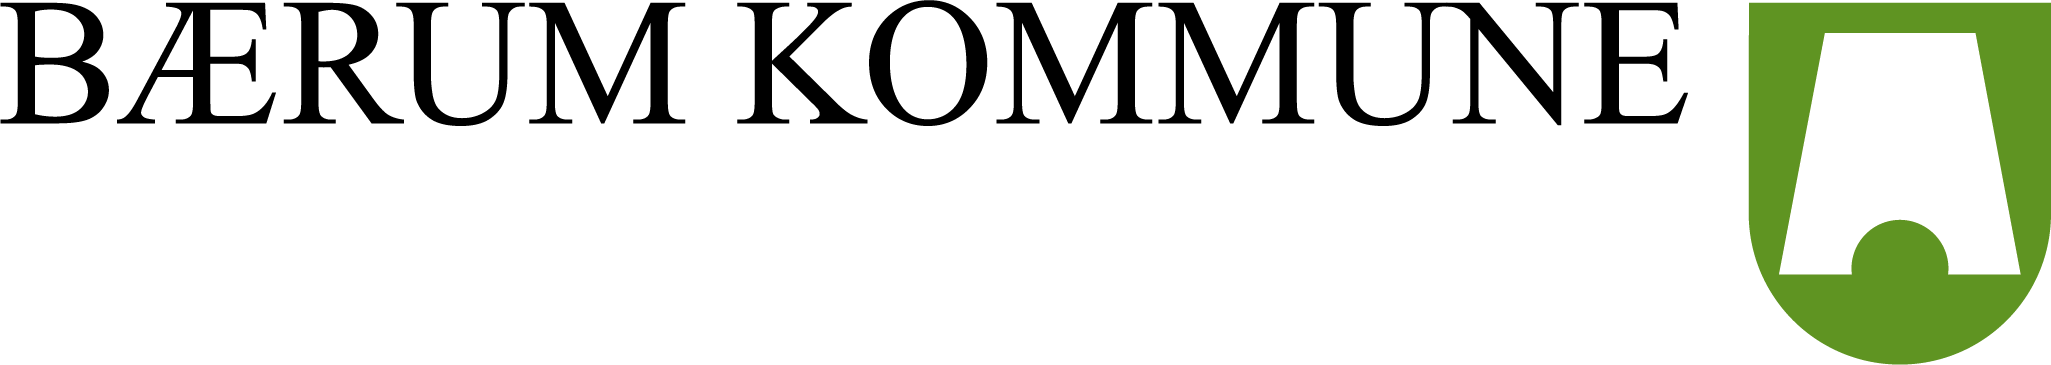 bk-logo_sidestilt_farger_sorttekstBærum